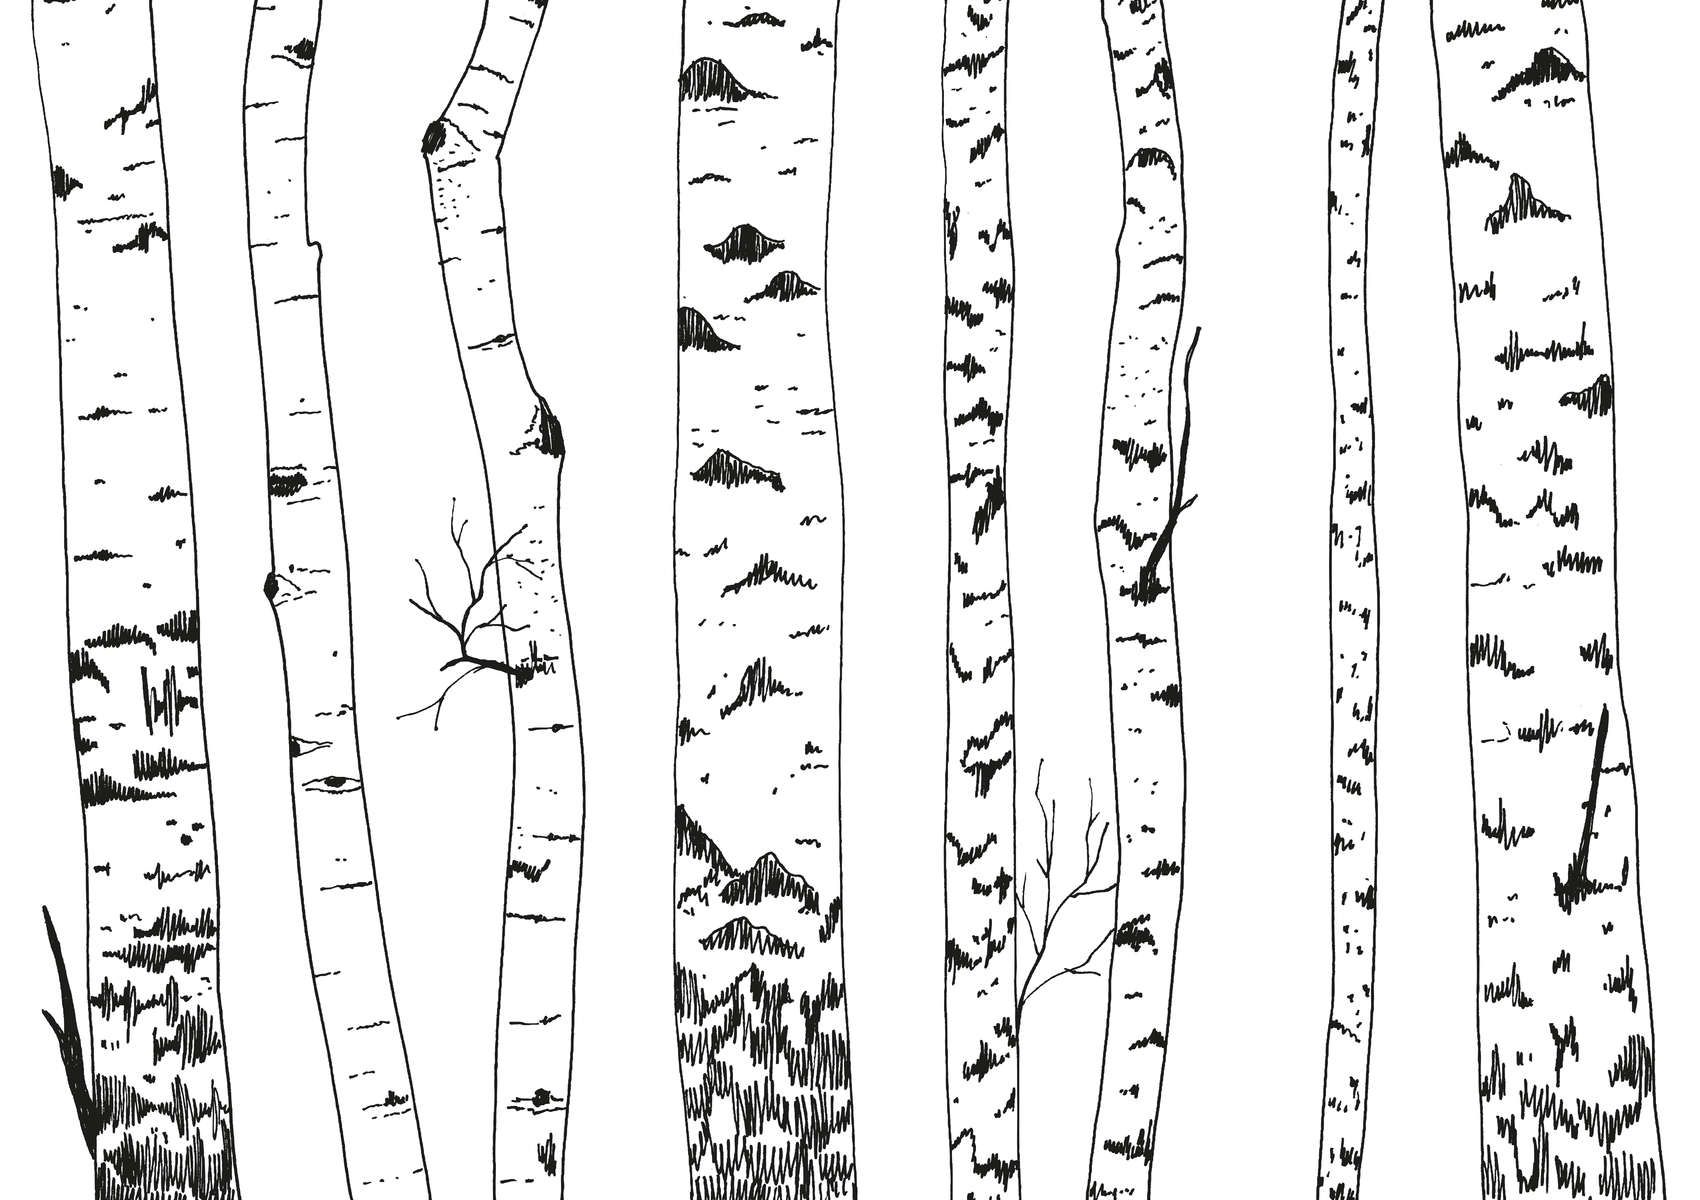             Fototapete gezeichneter Birkenwald – Glattes & perlmutt-schimmerndes Vlies
        